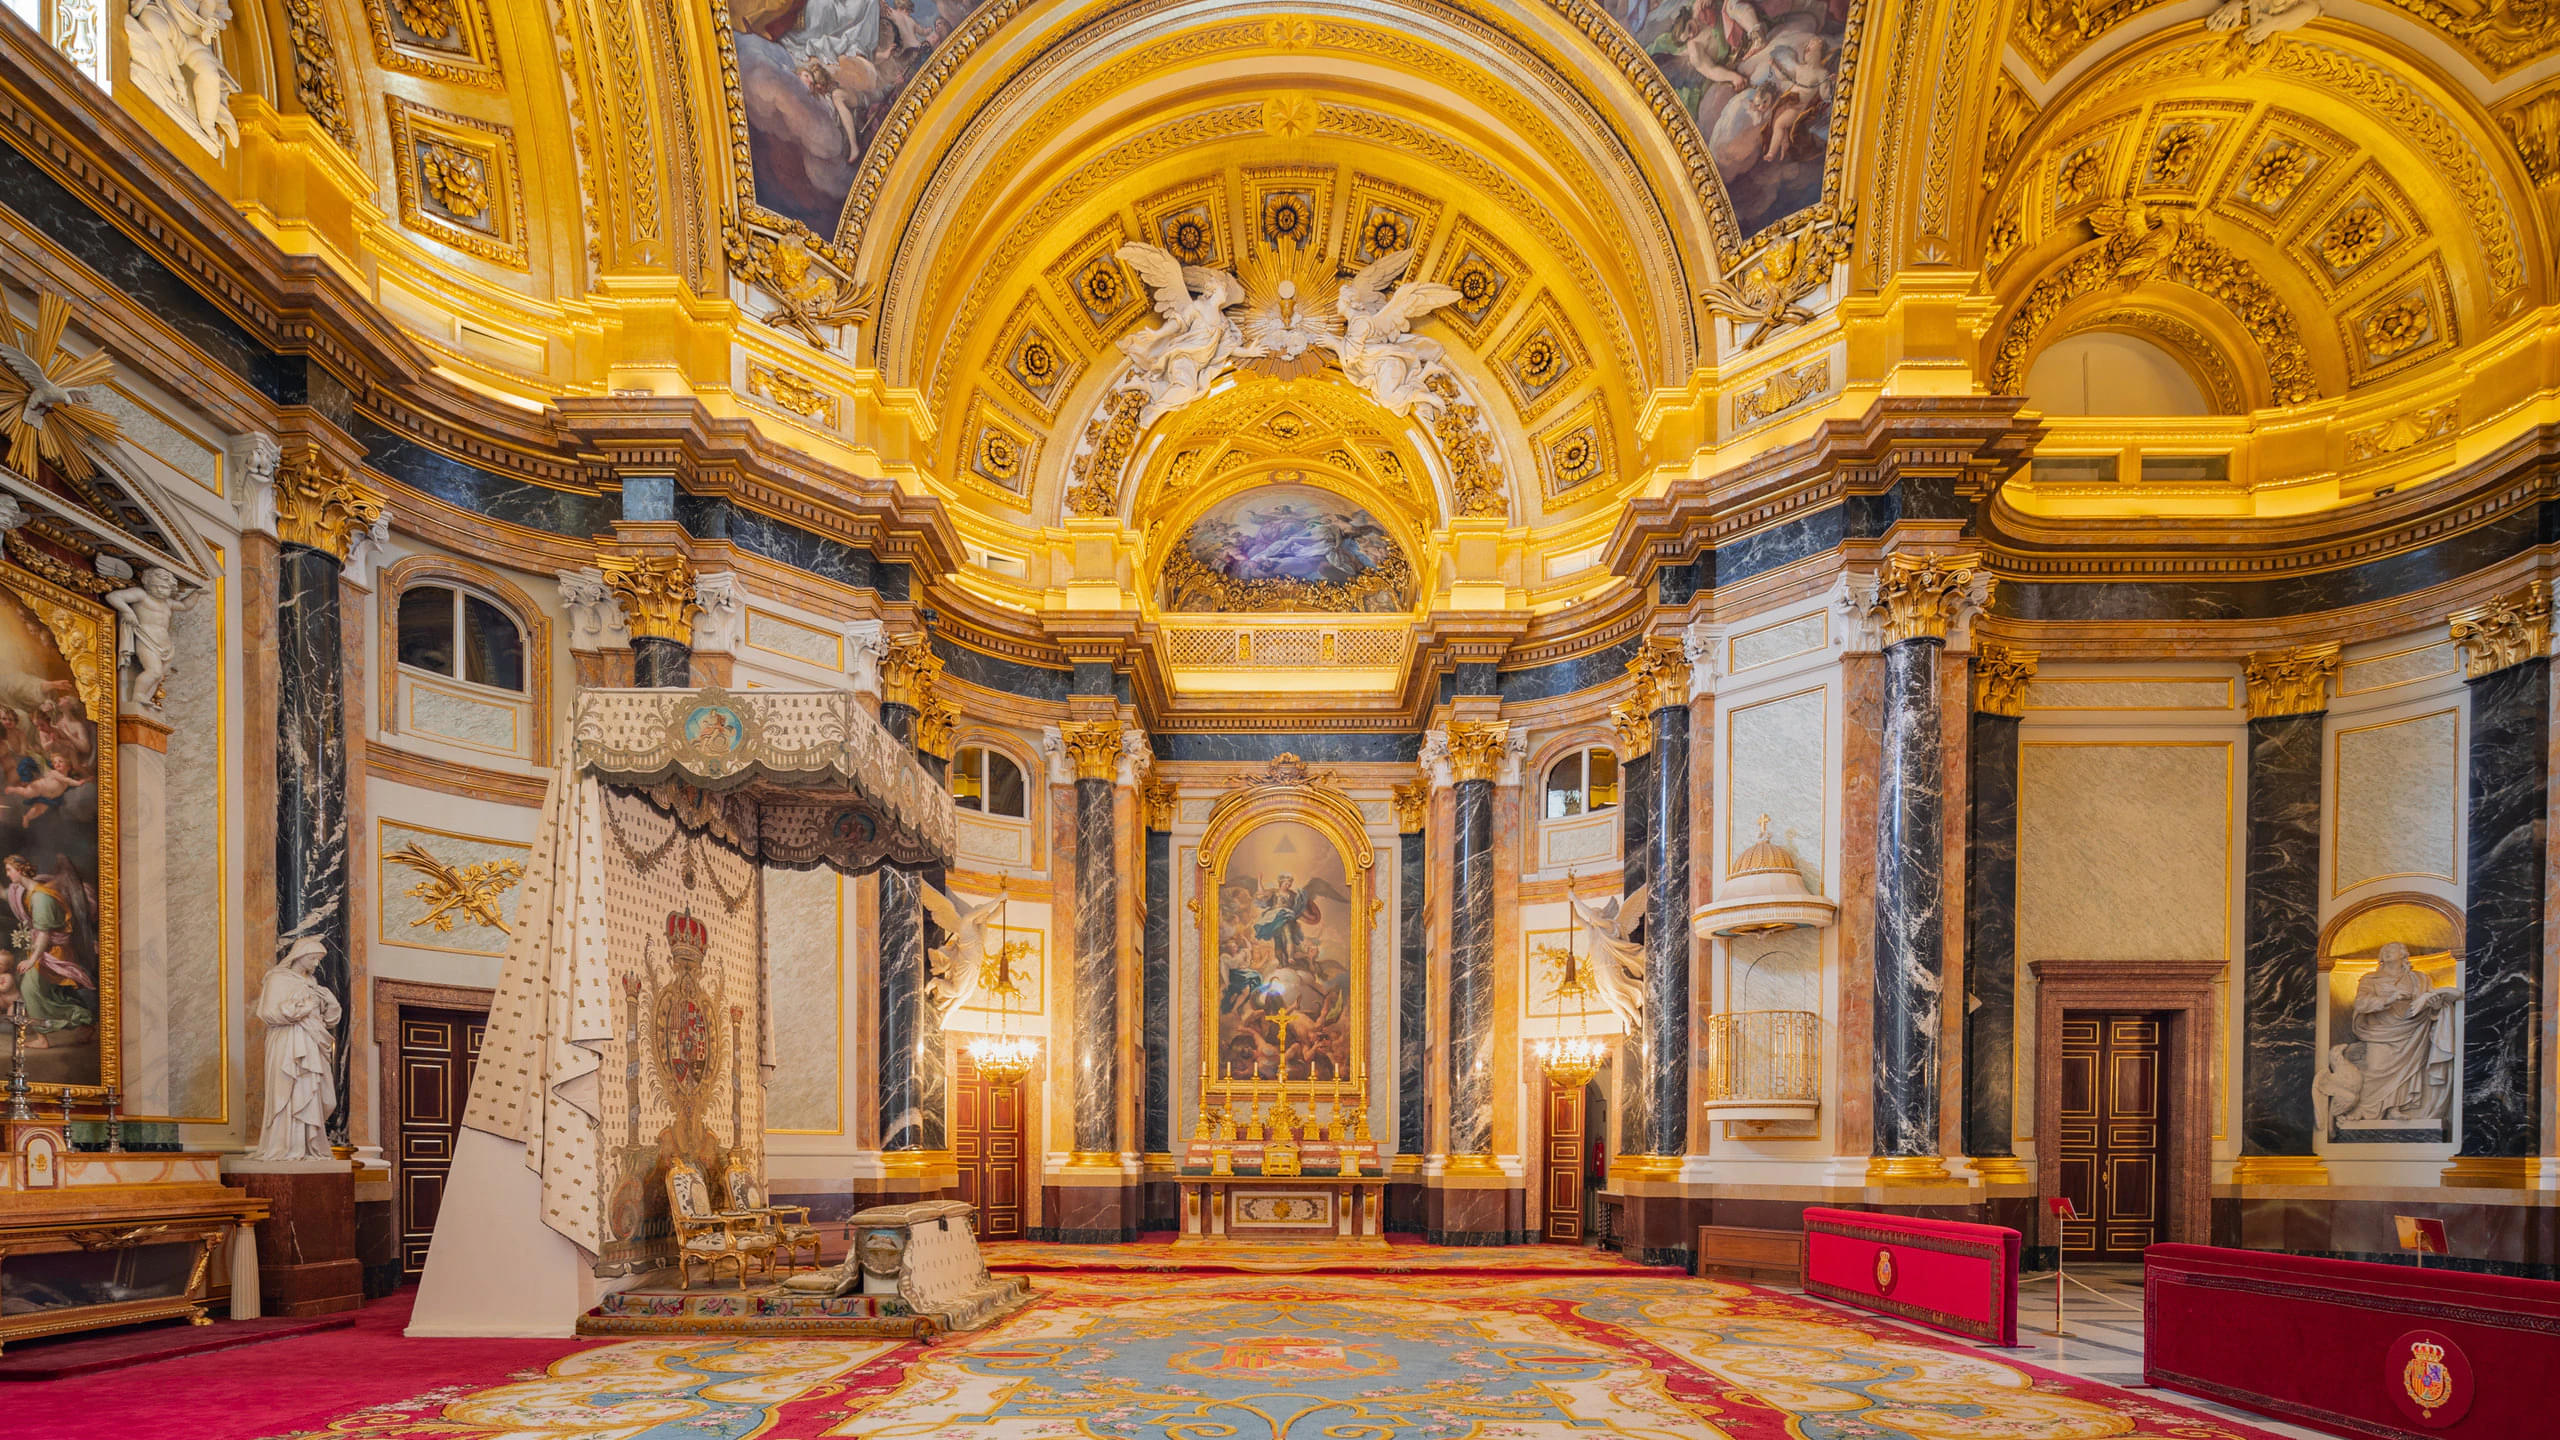 Royal Chapel of Royal Palace of Madrid